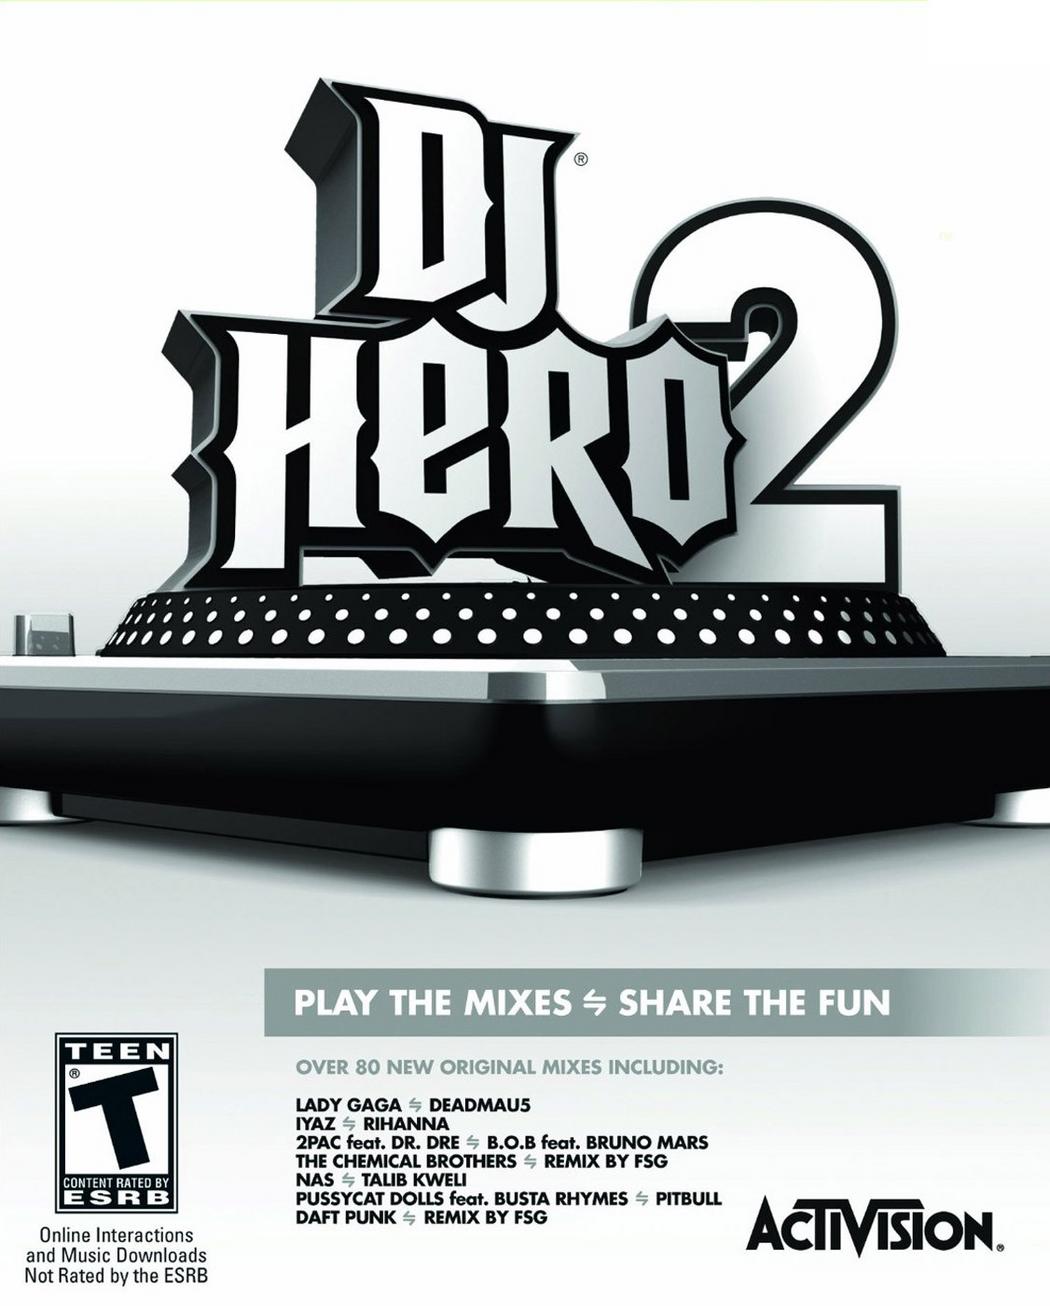 "DJ Hero 2" Album Cover